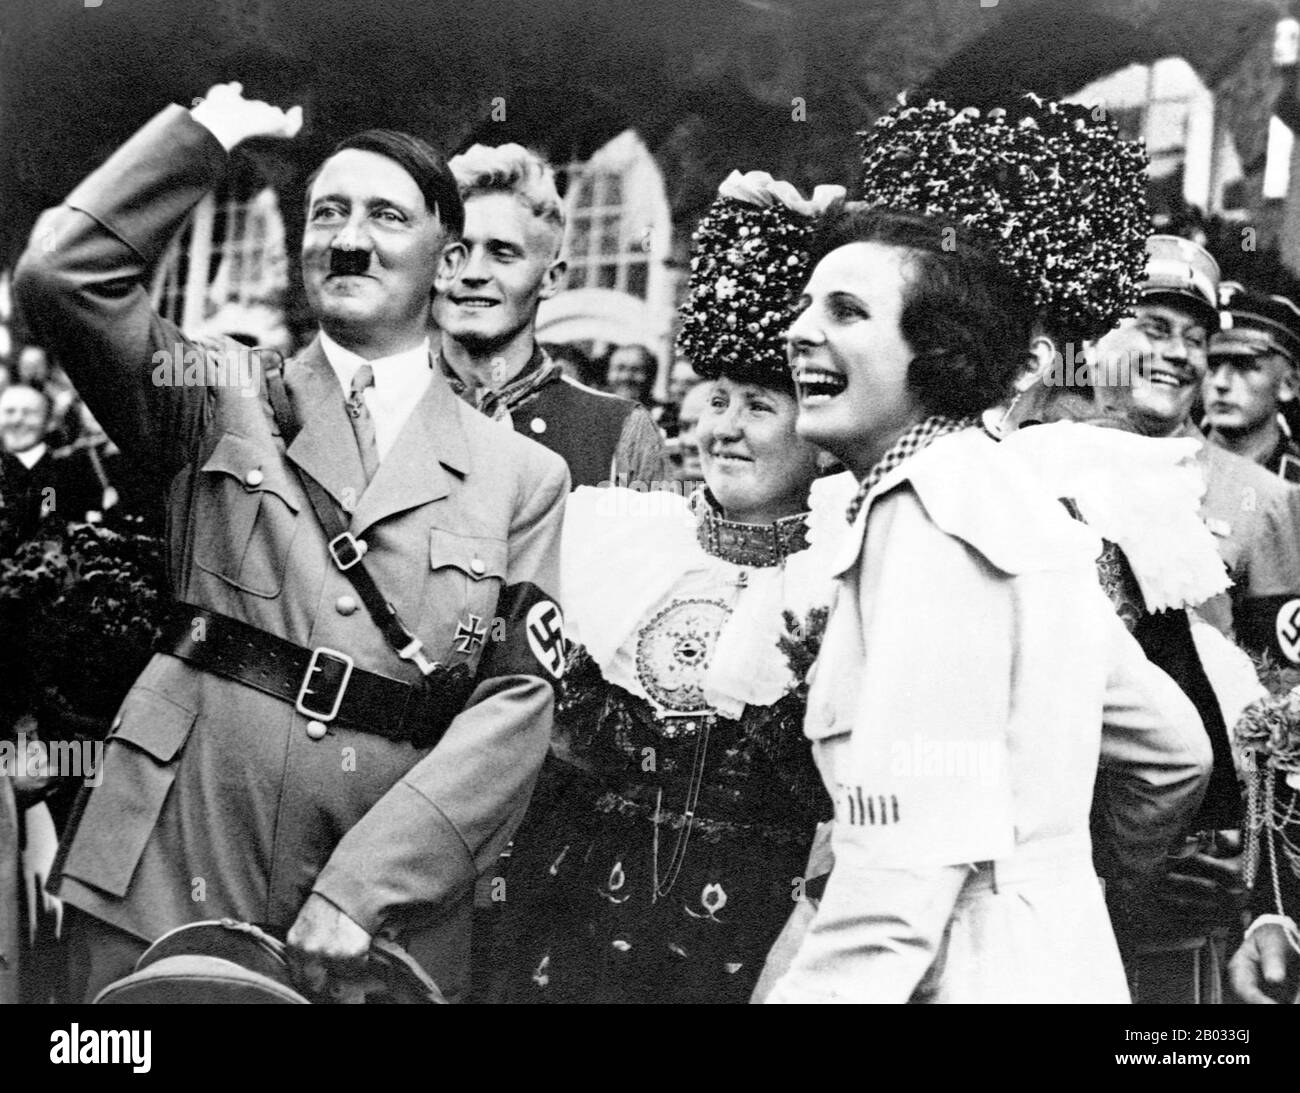 Helene Bertha Amalie 'Leni' Riefenstahl (22 agosto 1902 – 8 settembre 2003) è stato un . Adolf Hitler (20 aprile 1889 – 30 aprile 1945) è stato un politico tedesco di origine austriaca, leader del partito nazista (NSDAP), cancelliere della Germania dal 1933 al 1945, e Fuhrer (leader) della Germania nazista dal 1934 al 1945. Come dittatore della Germania nazista iniziò la seconda guerra mondiale in Europa ed era una figura centrale dell'Olocausto. Foto Stock